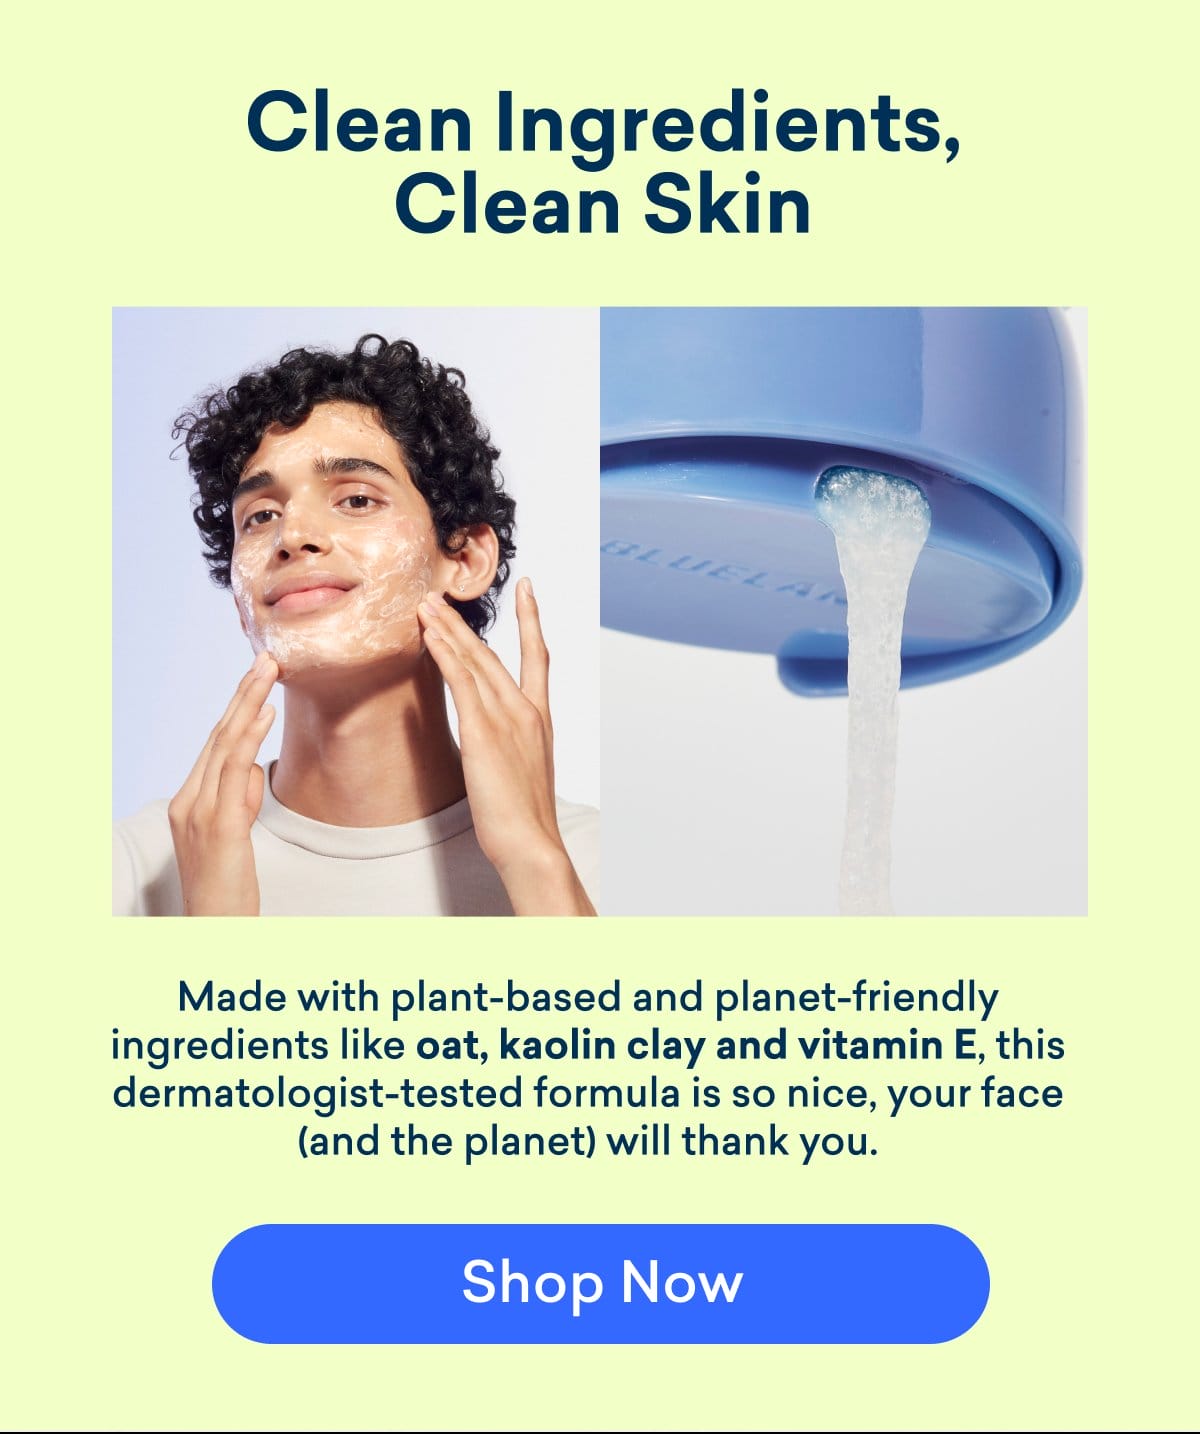 Clean ingredients, clean skin